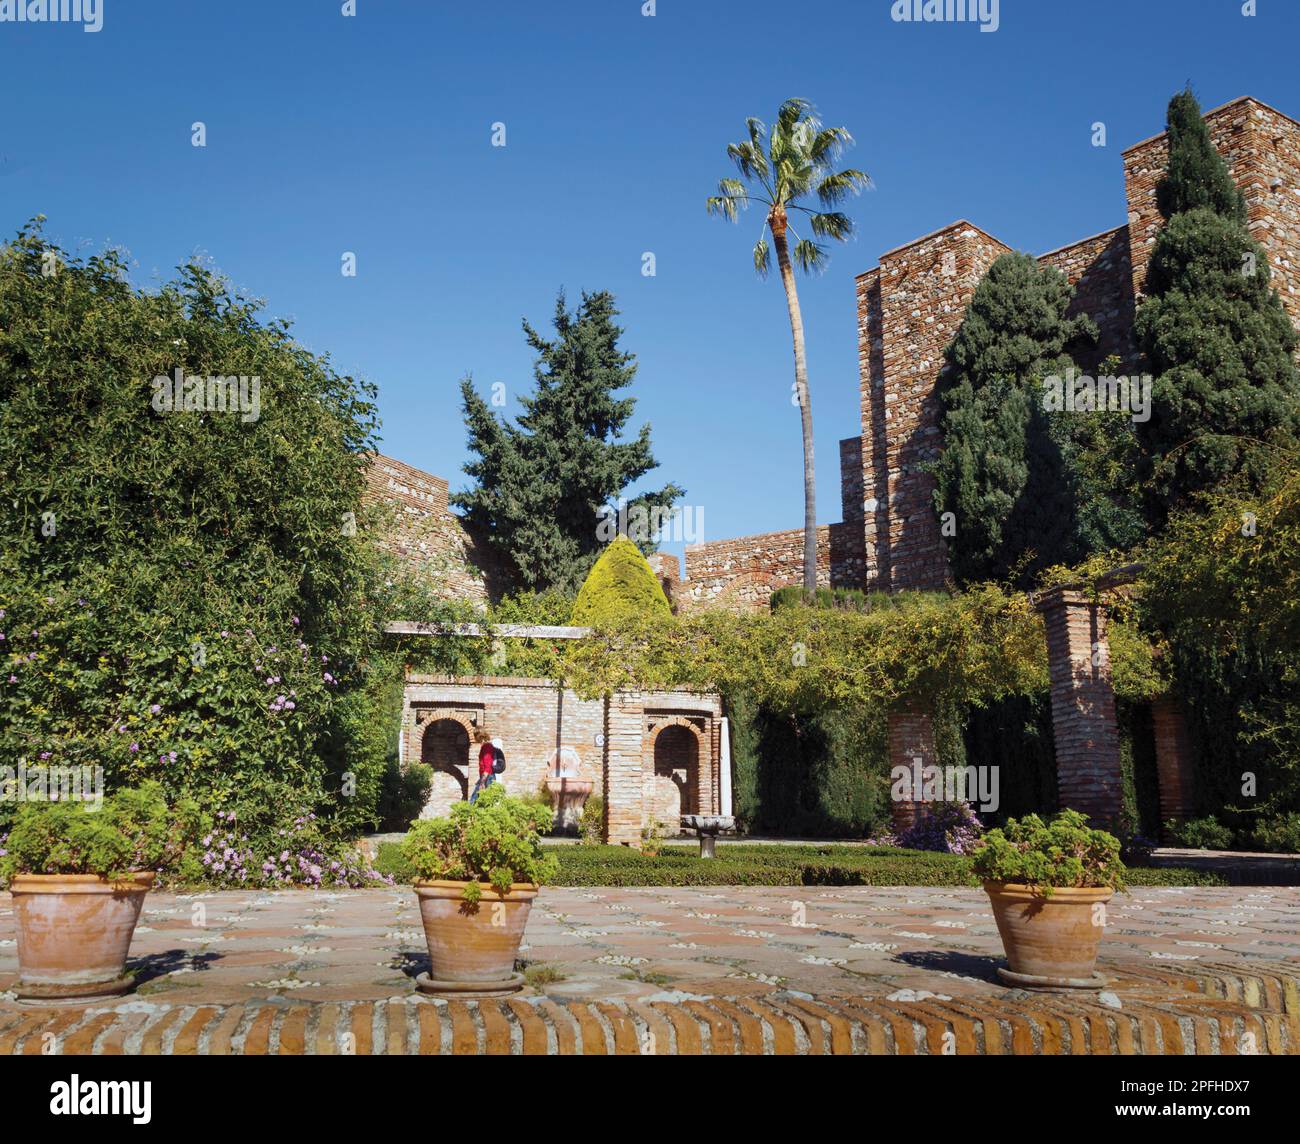 Malaga, Provinz Malaga, Andalusien, Südspanien. Plaza de Armas oder Parade Ground, jetzt ein Garten, in der Alcazaba oder Burg. Stockfoto